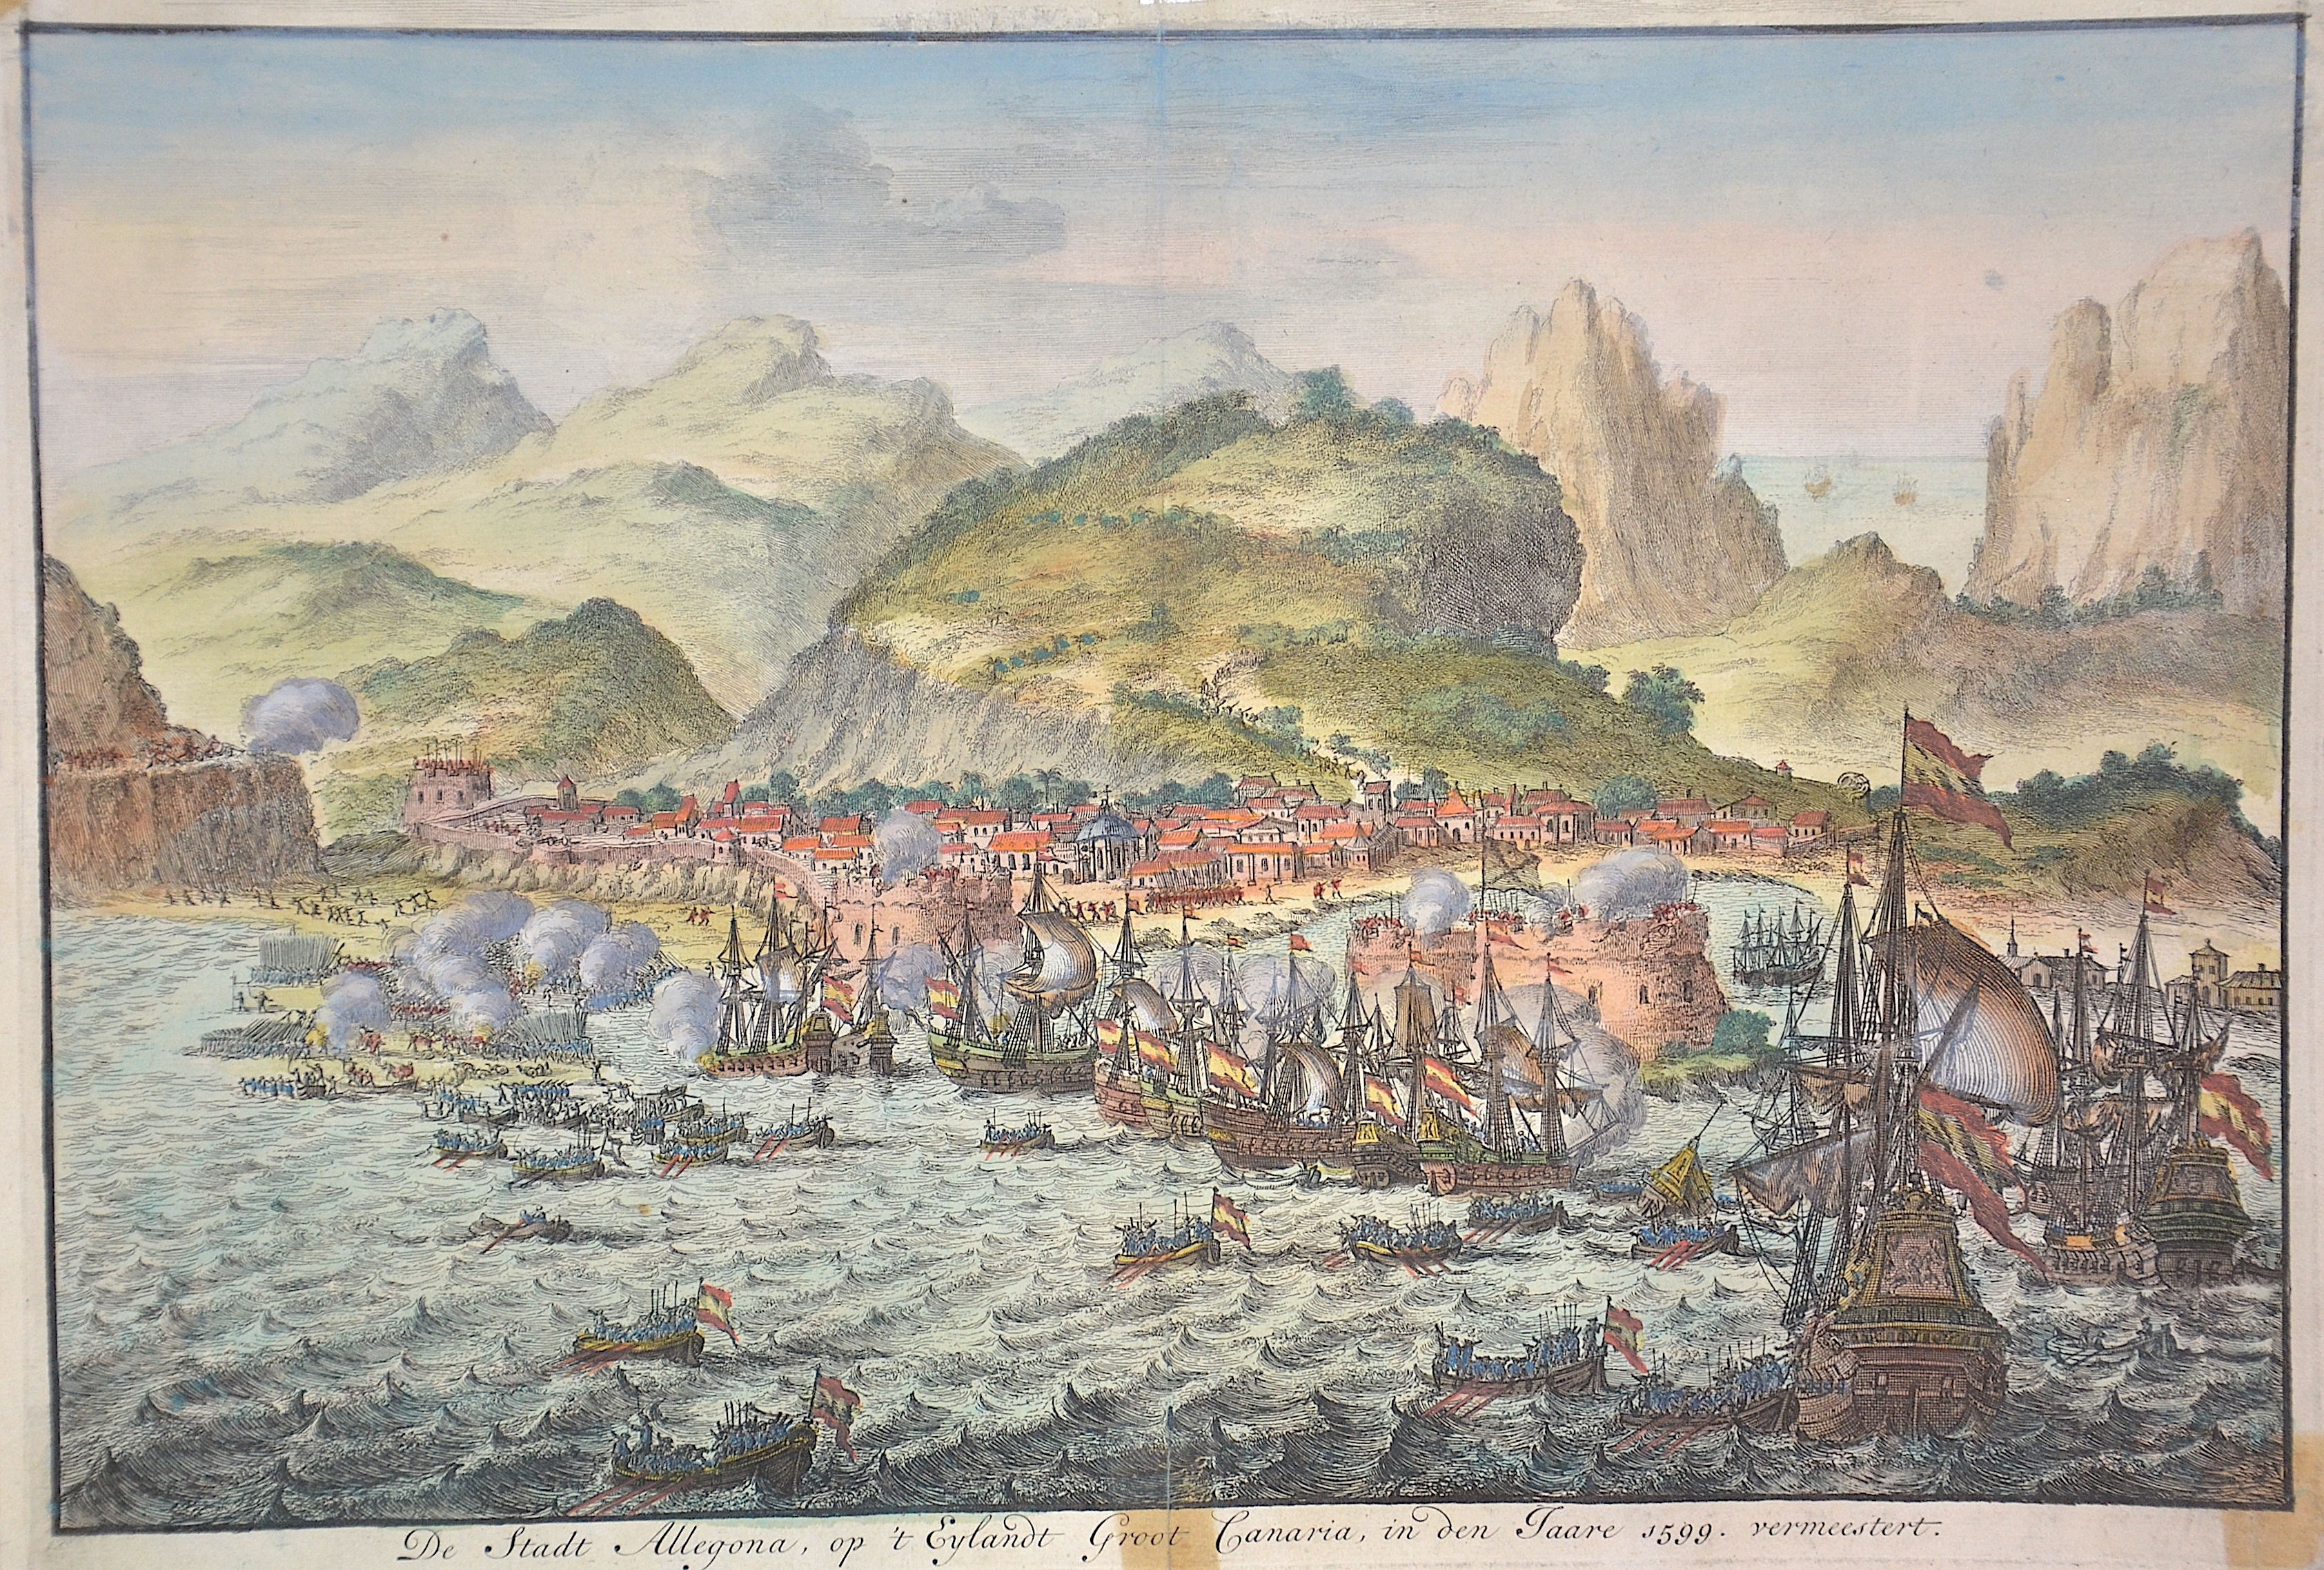 Anonymus  De Stadt Allegona, op ‚tEylandt Groot Canaria, in den Jaare 1599. vermeestert.